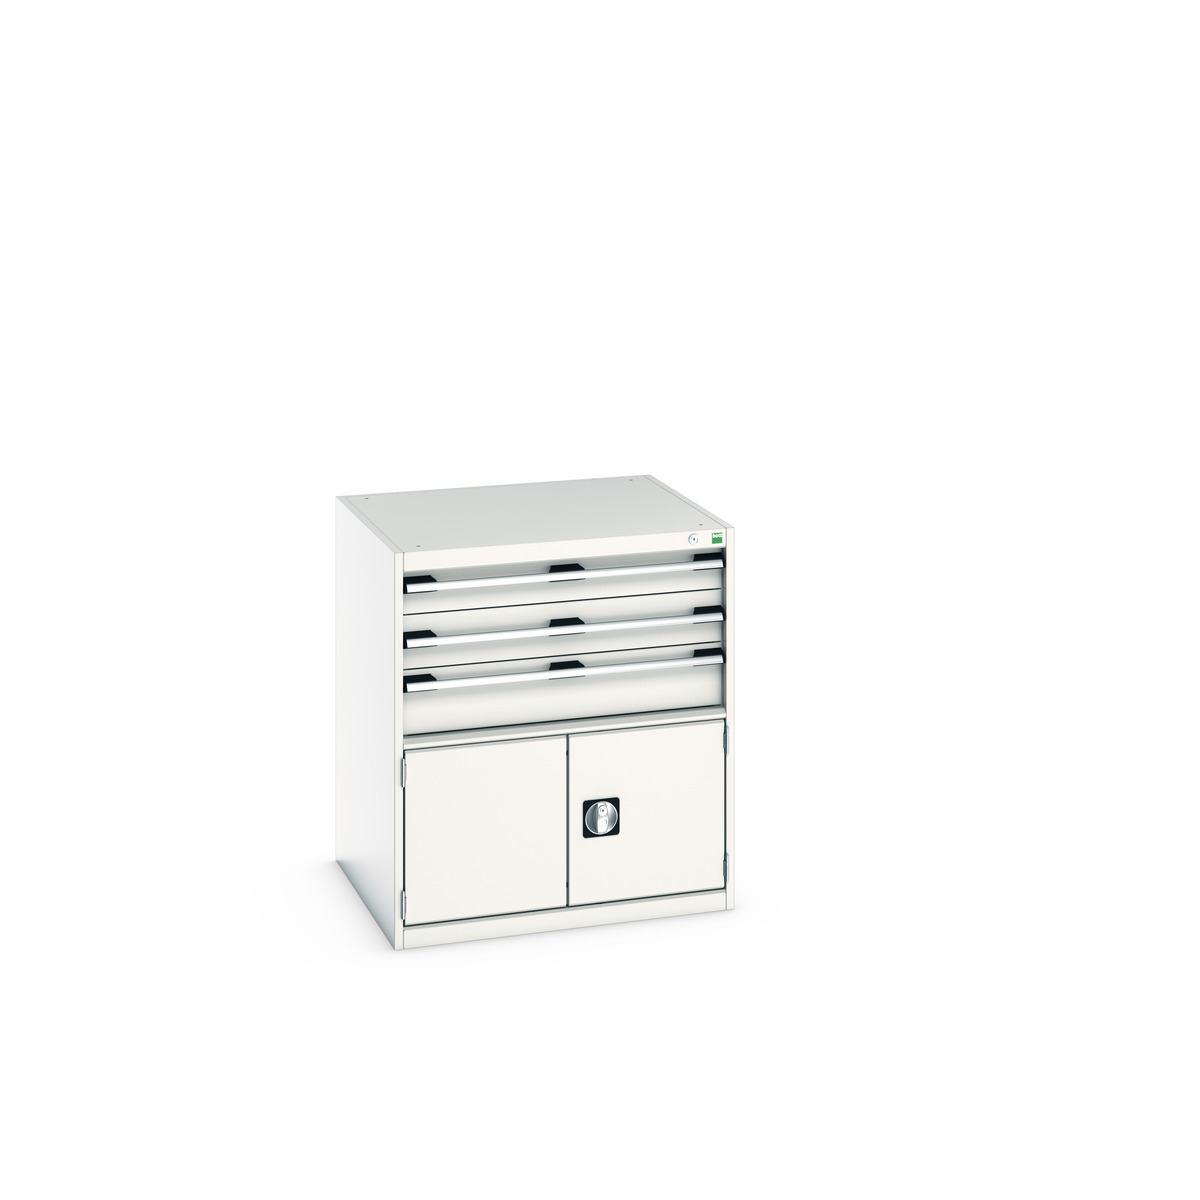 40028105.16V - cubio drawer-door cabinet